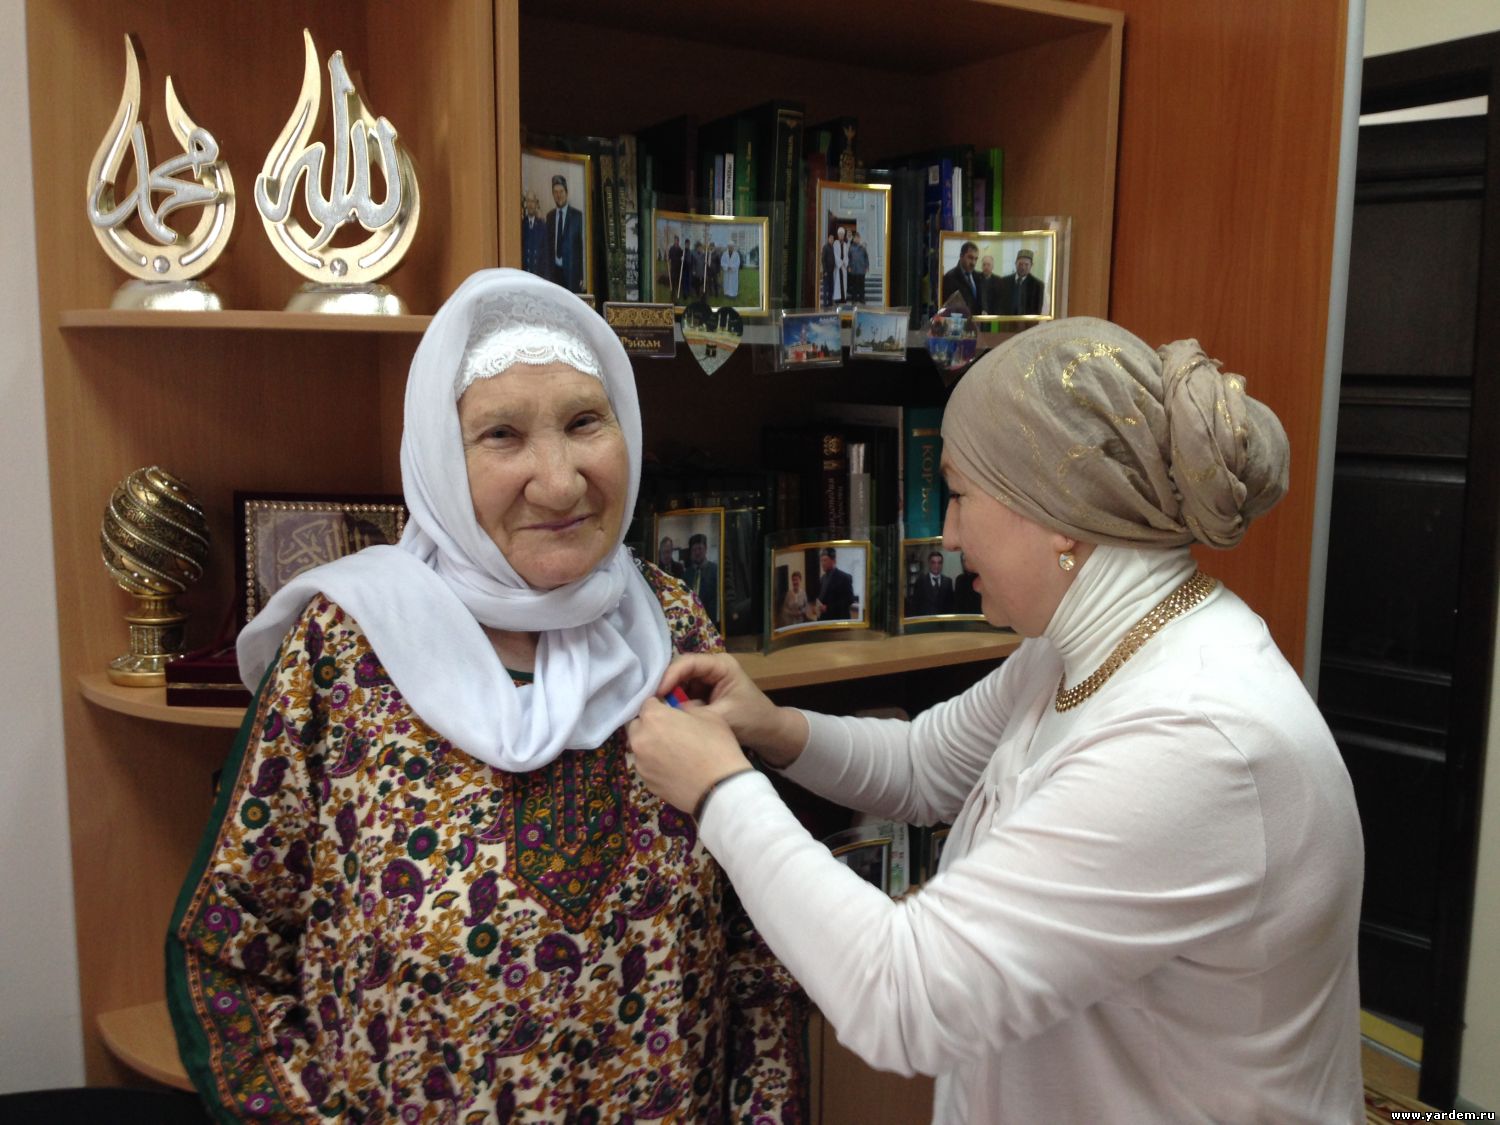 Альмира Адиатуллина награждена орденом фонда "Ярдэм". Общие новости